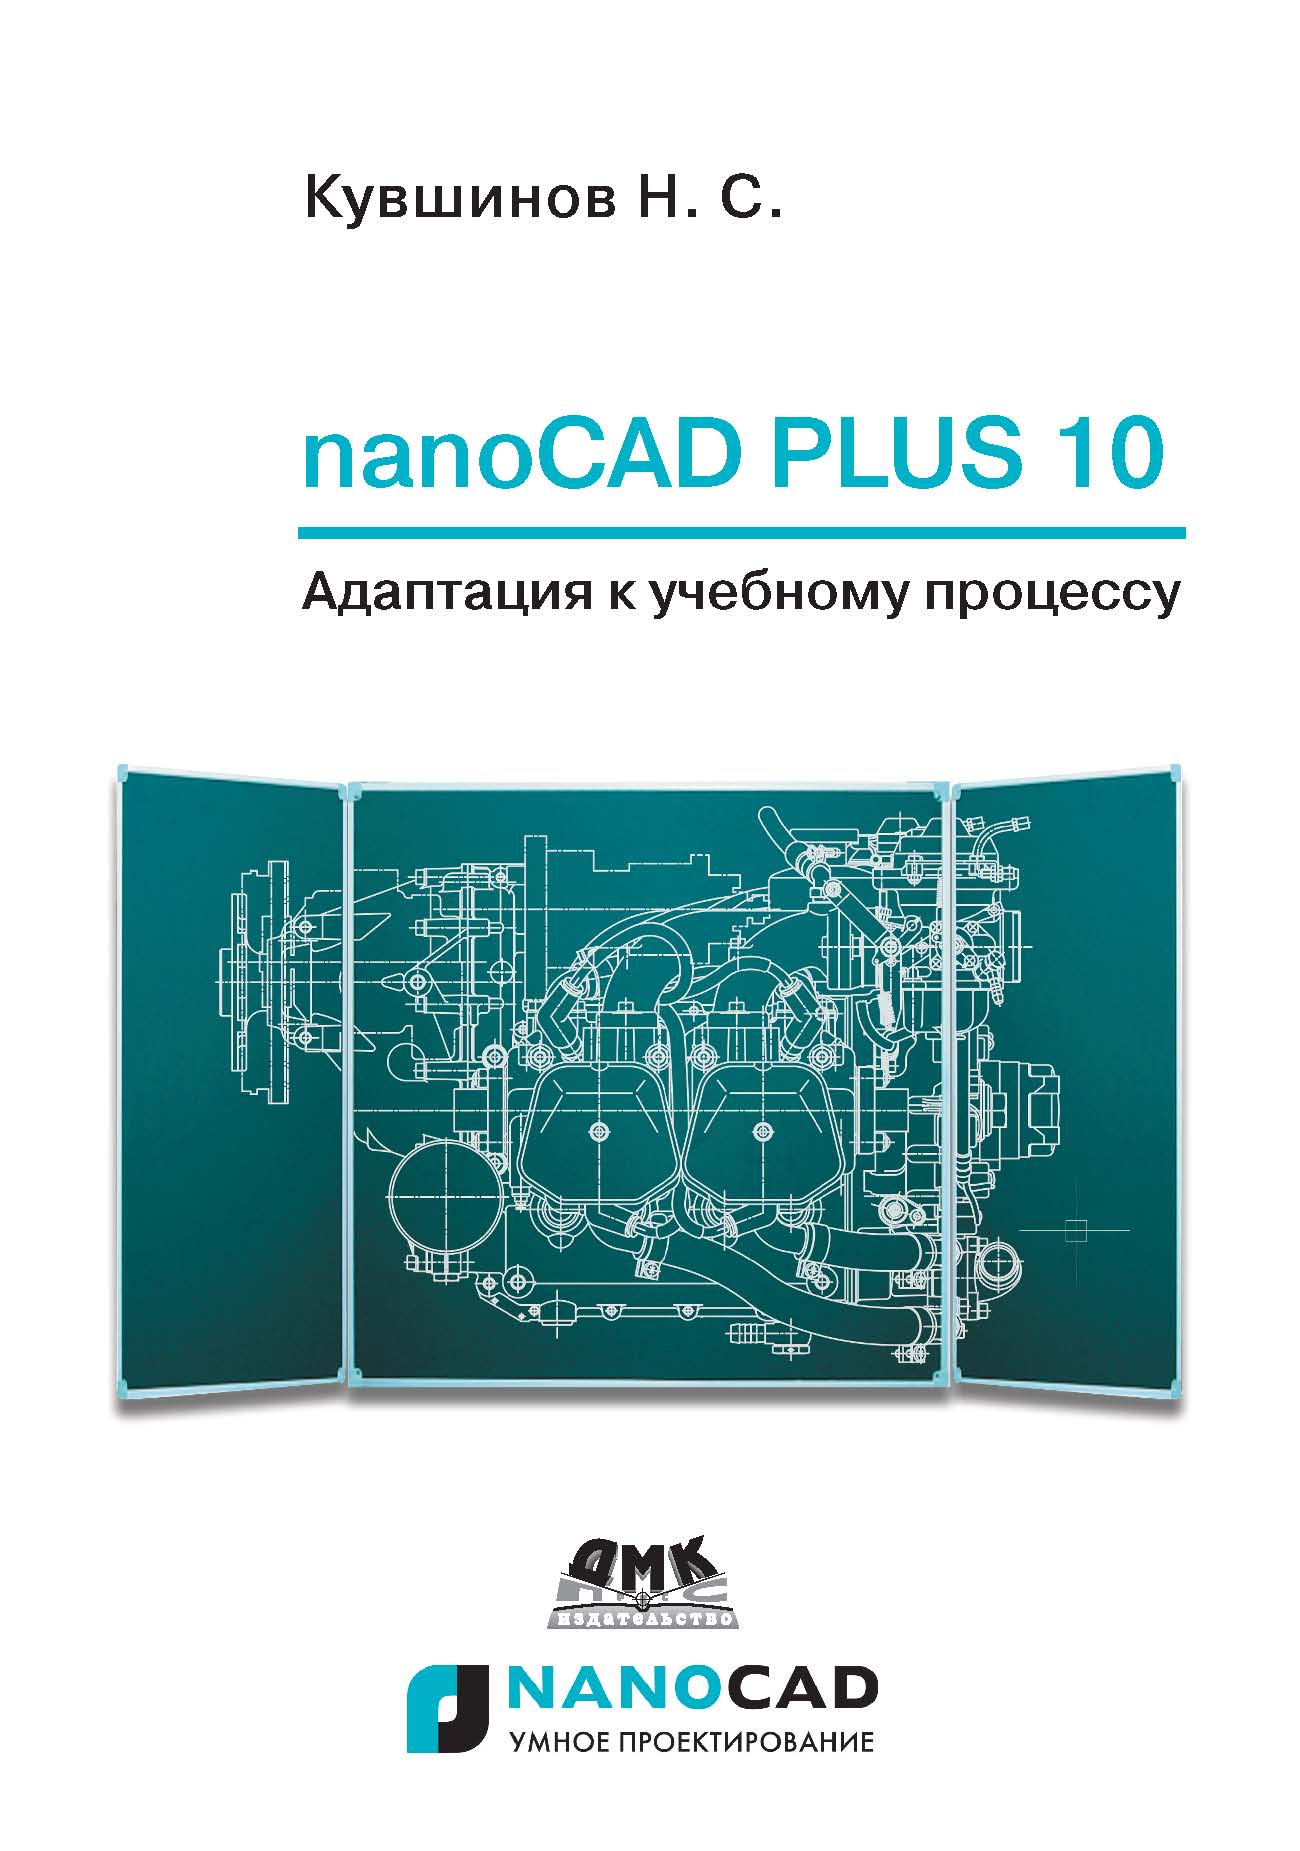 Книга САПР-платформа nanoCAD nanoCAD Plus 10. Адаптация к учебному процессу созданная Николай Сергеевич Кувшинов может относится к жанру программы, проектирование, учебники и пособия для вузов. Стоимость электронной книги nanoCAD Plus 10. Адаптация к учебному процессу с идентификатором 44091324 составляет 399.00 руб.